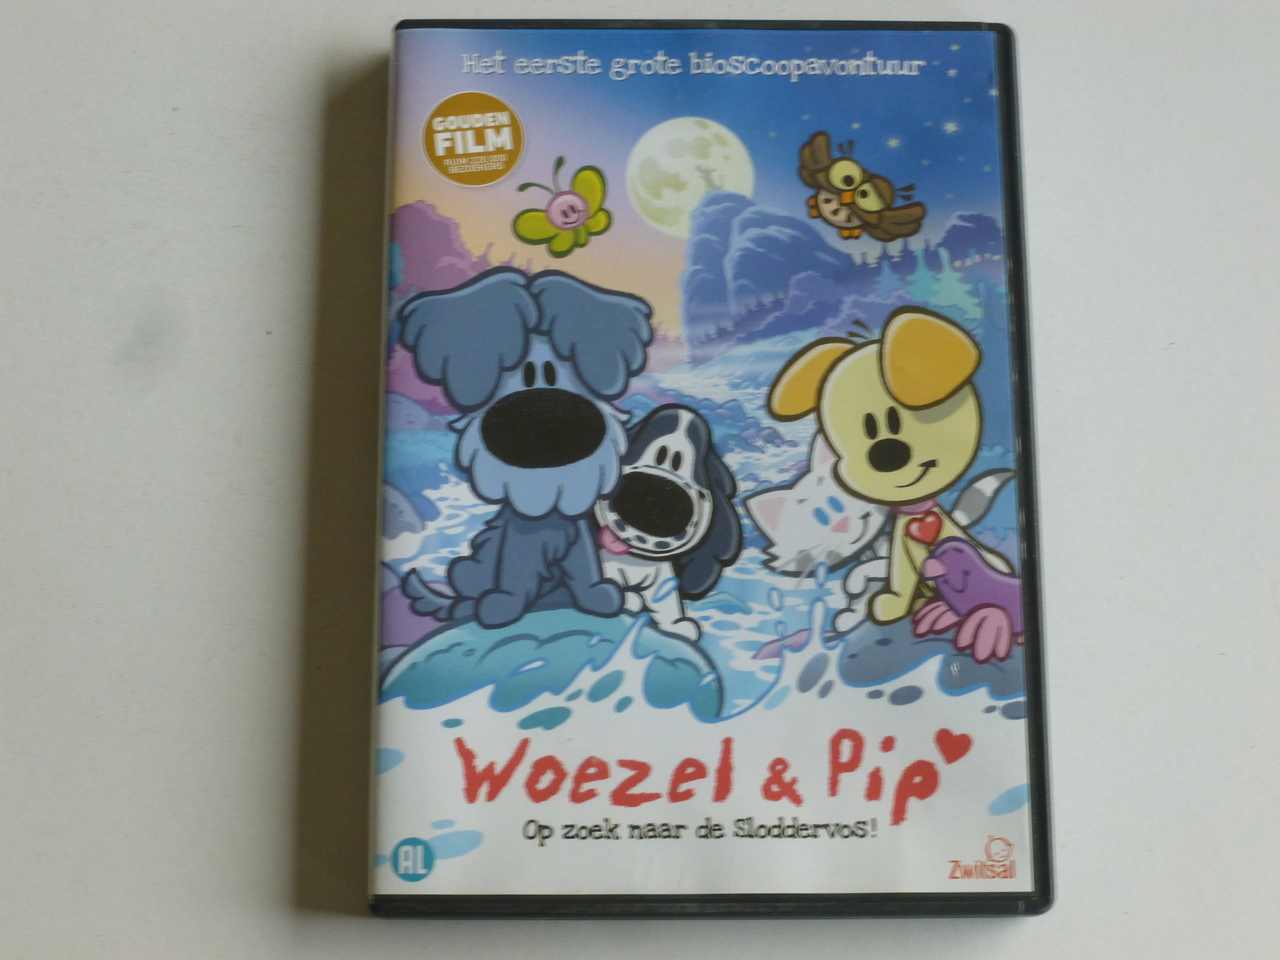 prinses taal Reisbureau Woezel & Pip - Op zoek naar de Sloddervos! (DVD) - Tweedehands CD